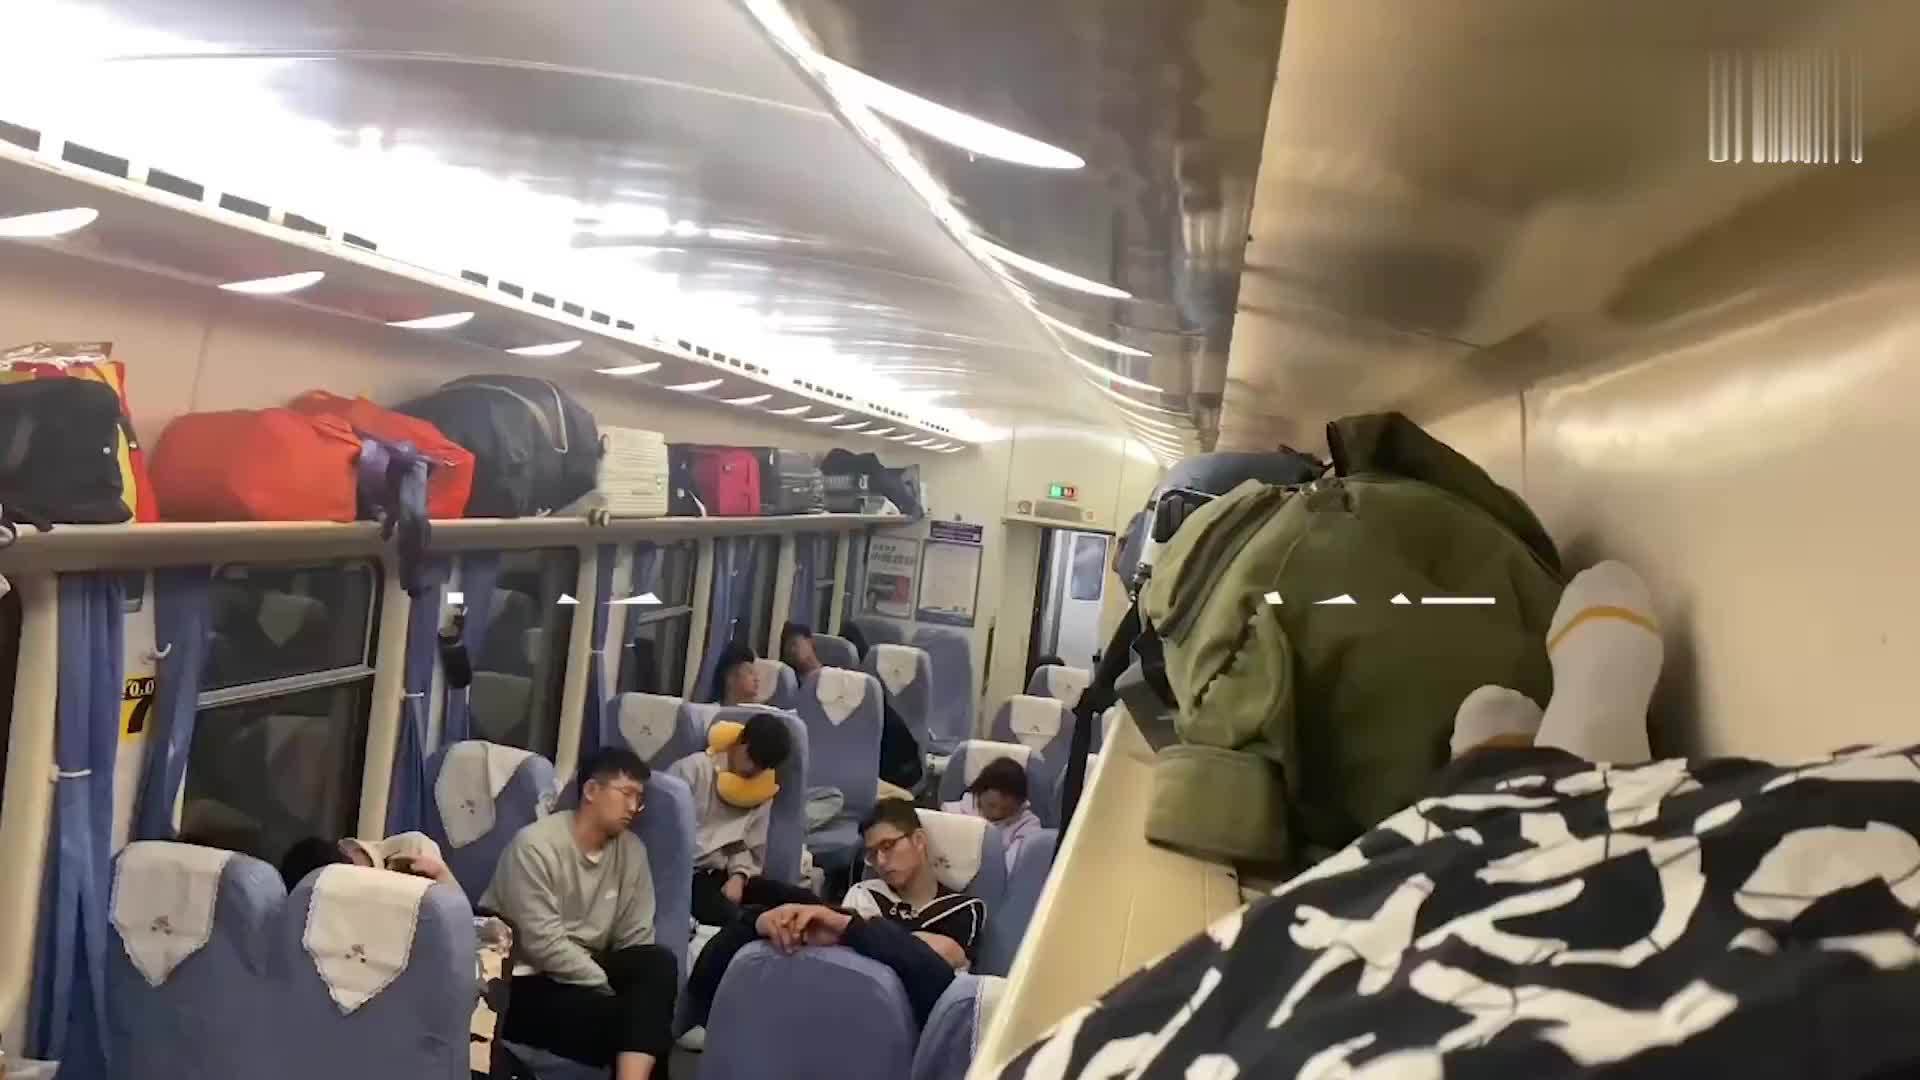 实拍, 元旦放假首日坐火车硬座的人们, 睡觉的样子让人心酸|火车|硬座|实拍_新浪网